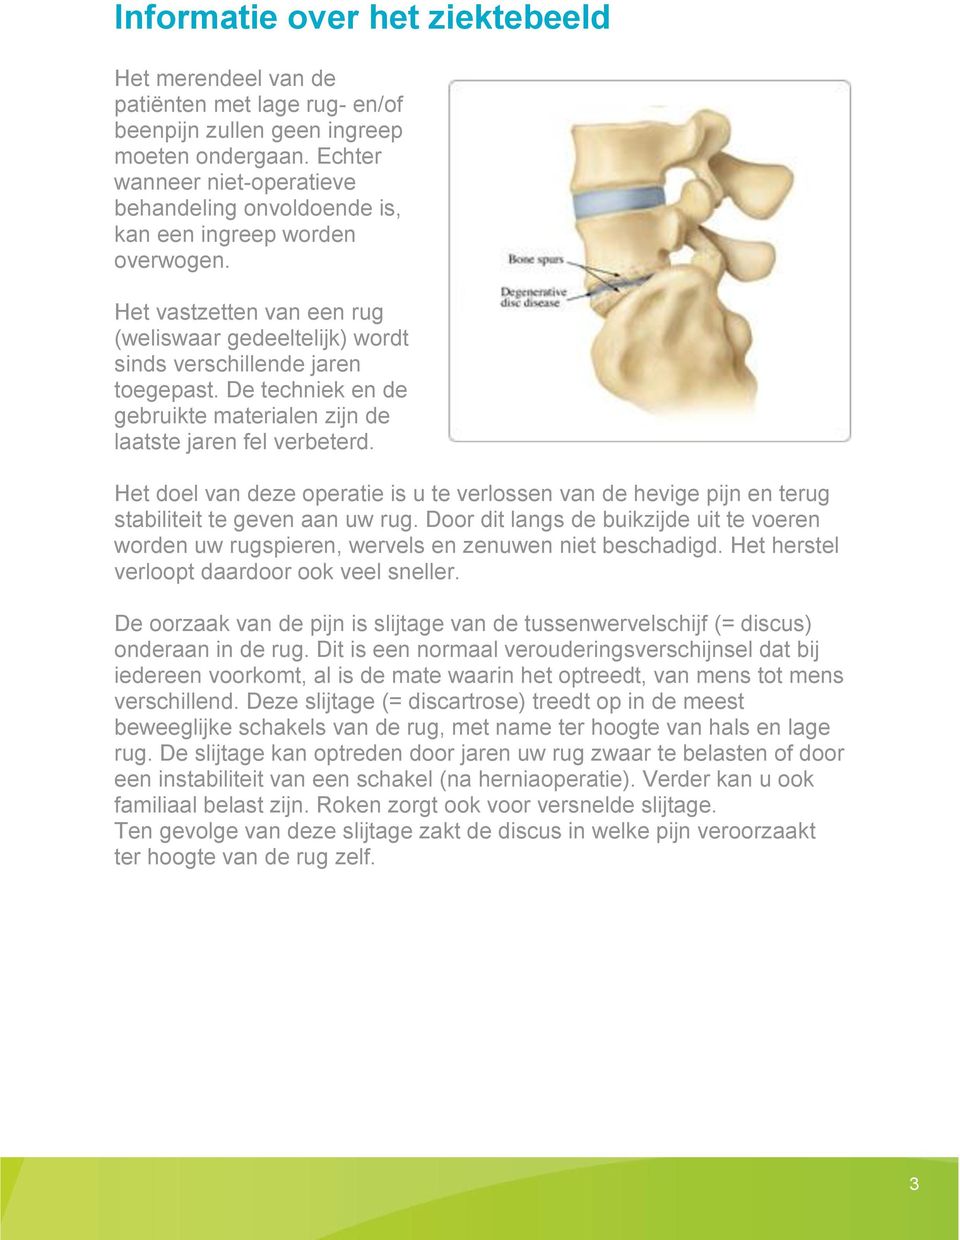 De techniek en de gebruikte materialen zijn de laatste jaren fel verbeterd. Het doel van deze operatie is u te verlossen van de hevige pijn en terug stabiliteit te geven aan uw rug.